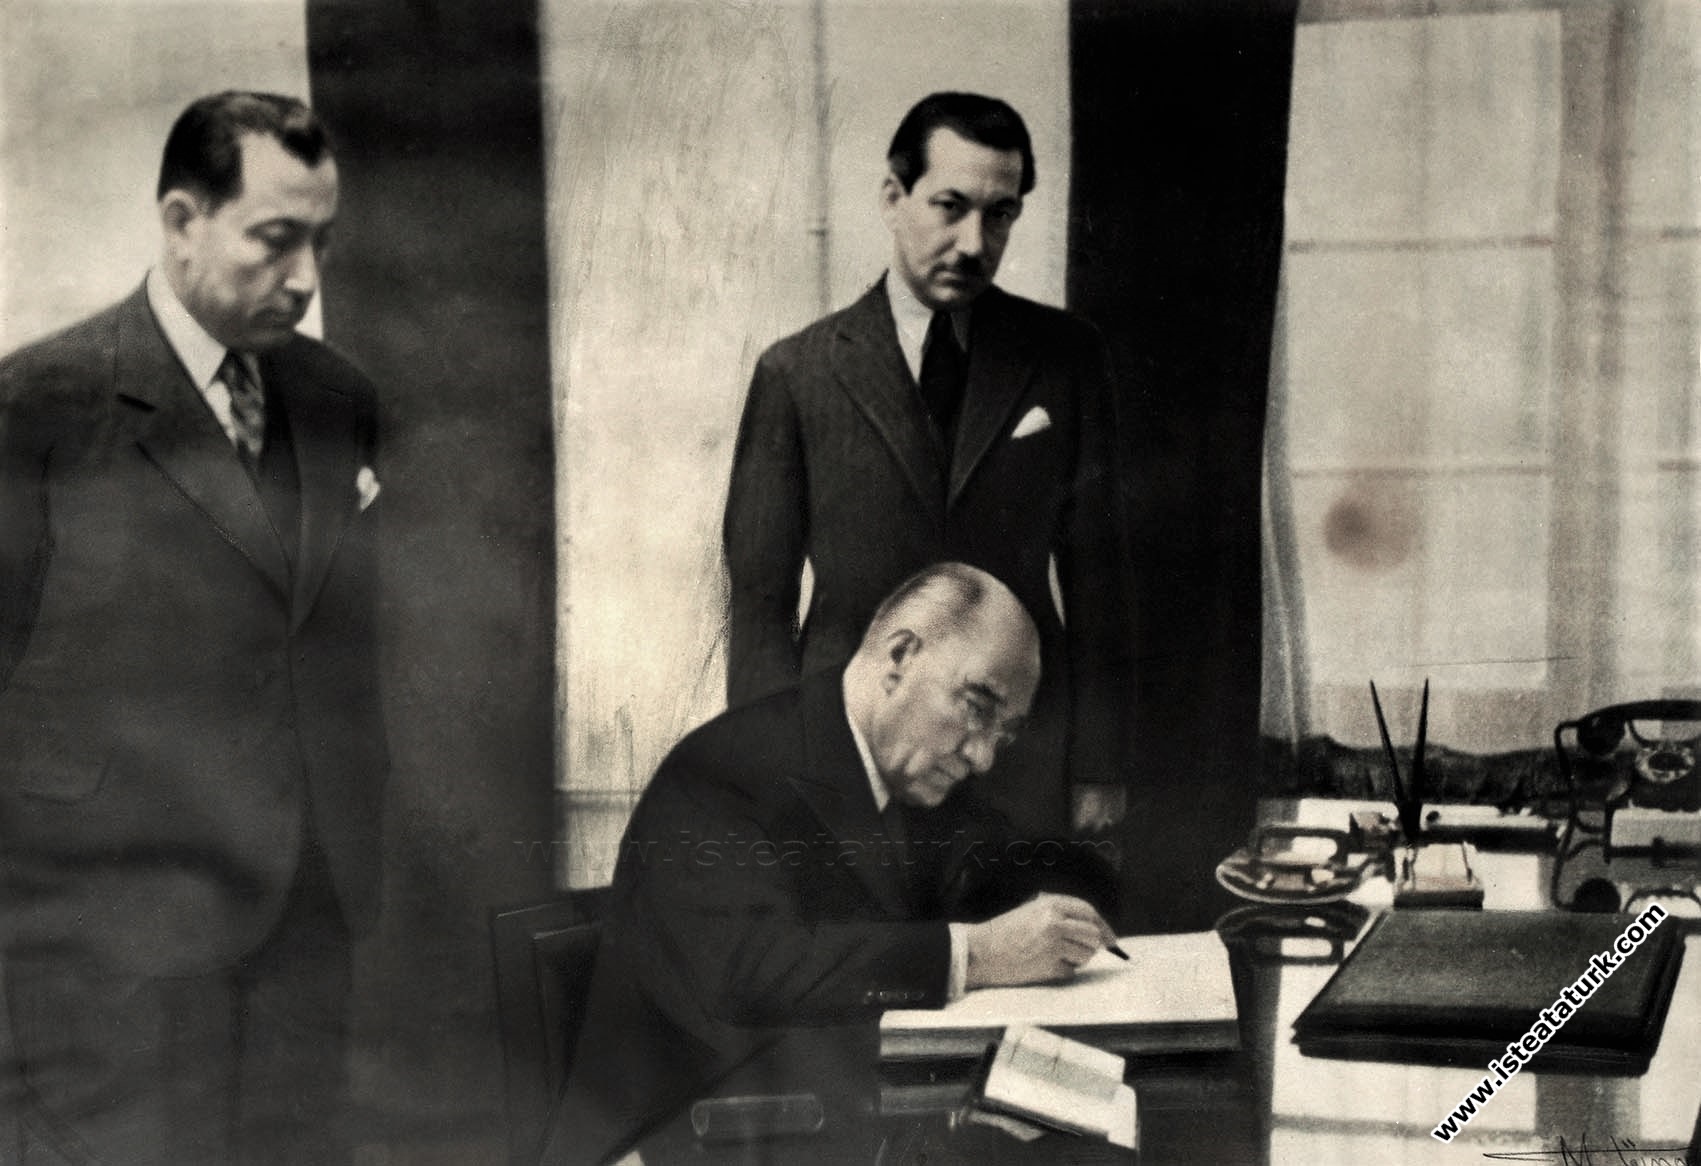 Atatürk Bursa Sümerbank Merinos Fabrikası'nı açtıktan sonra tesisleri gezerken. (02.02.1938)